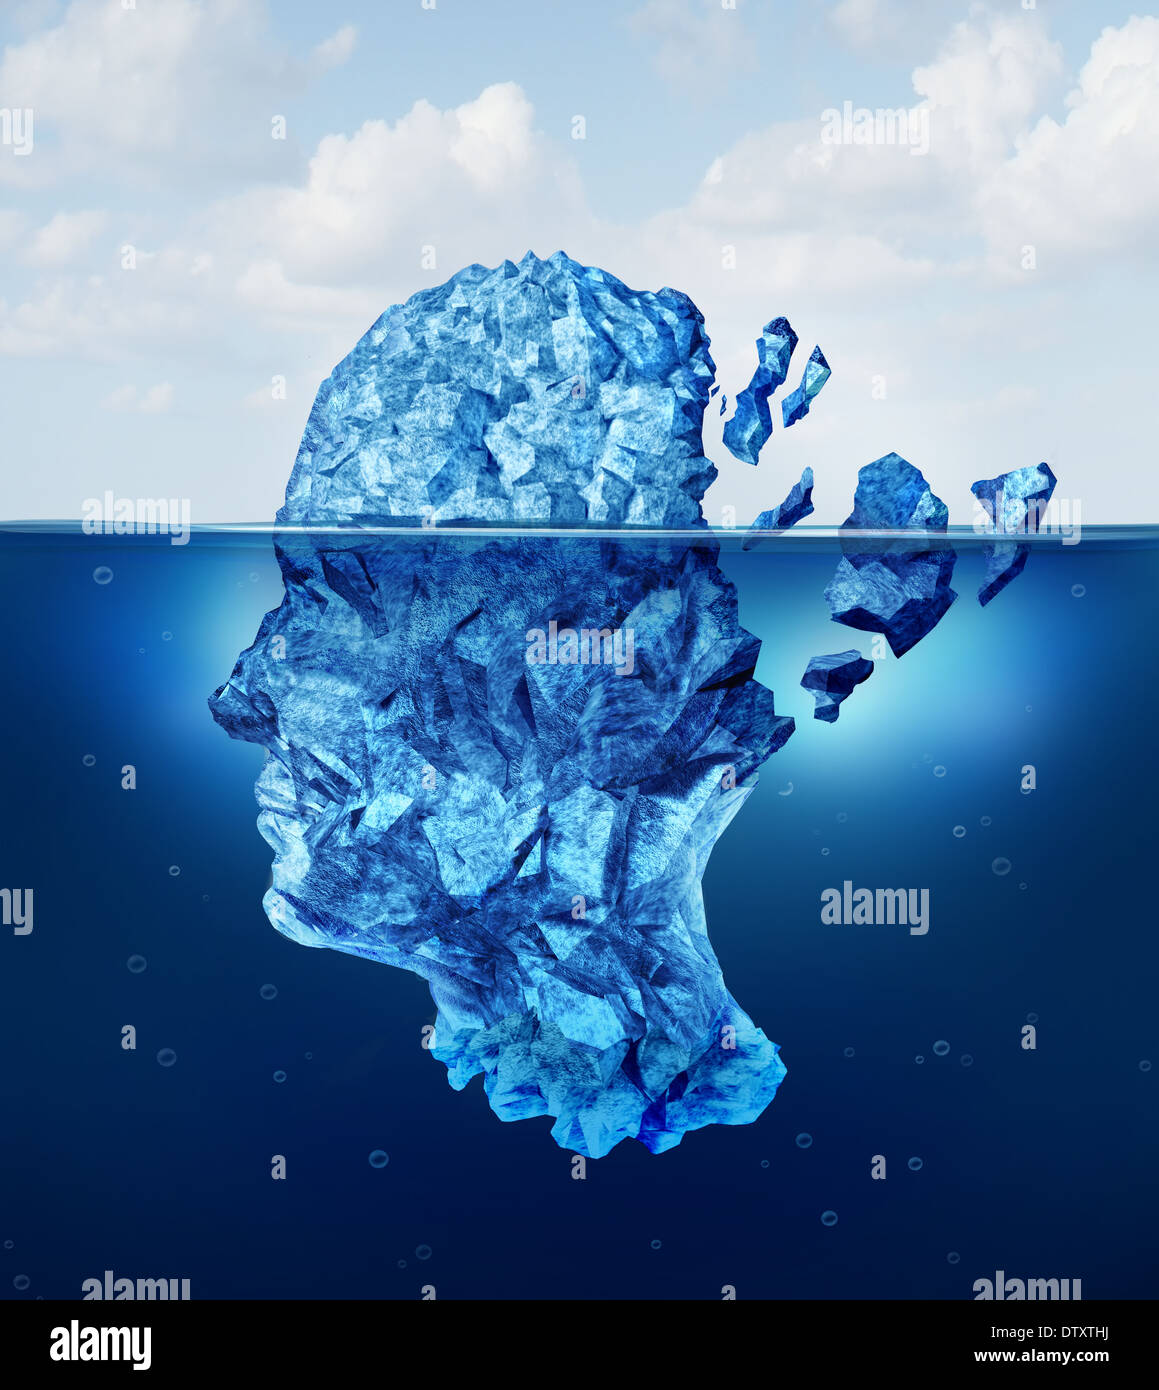 Trauma und Alterung des Gehirns oder neurologische Schäden Konzept als Eisberg schwebend in einem Ozean als einer gesundheitlichen Krise Metap auseinander zu brechen Stockfoto